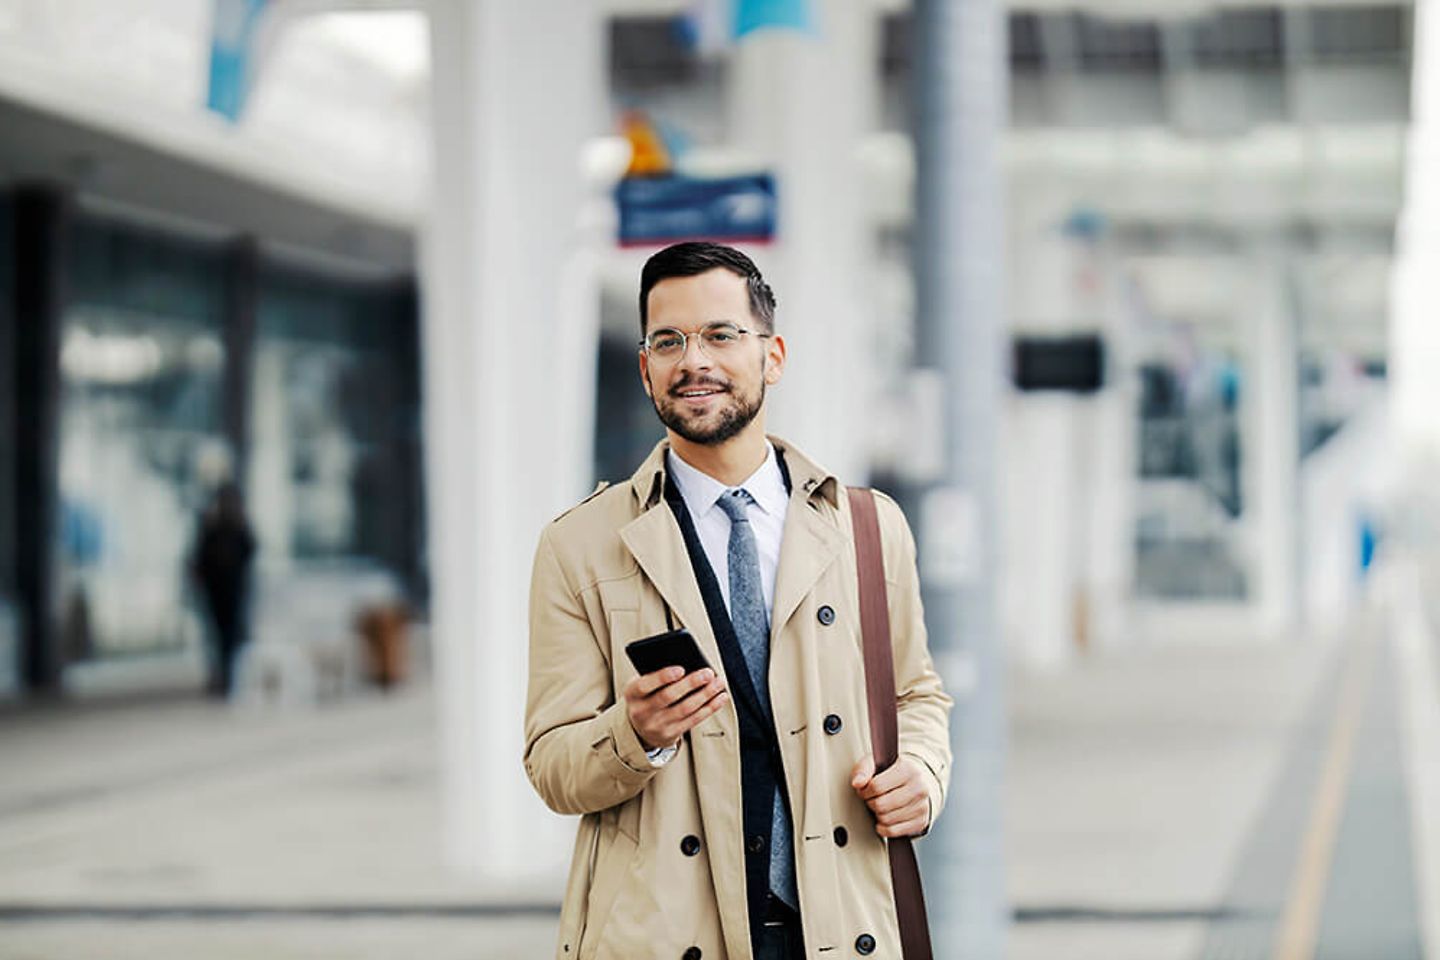 Mann im Business Outfit steht mit Smartphone in der Hand am Gleis